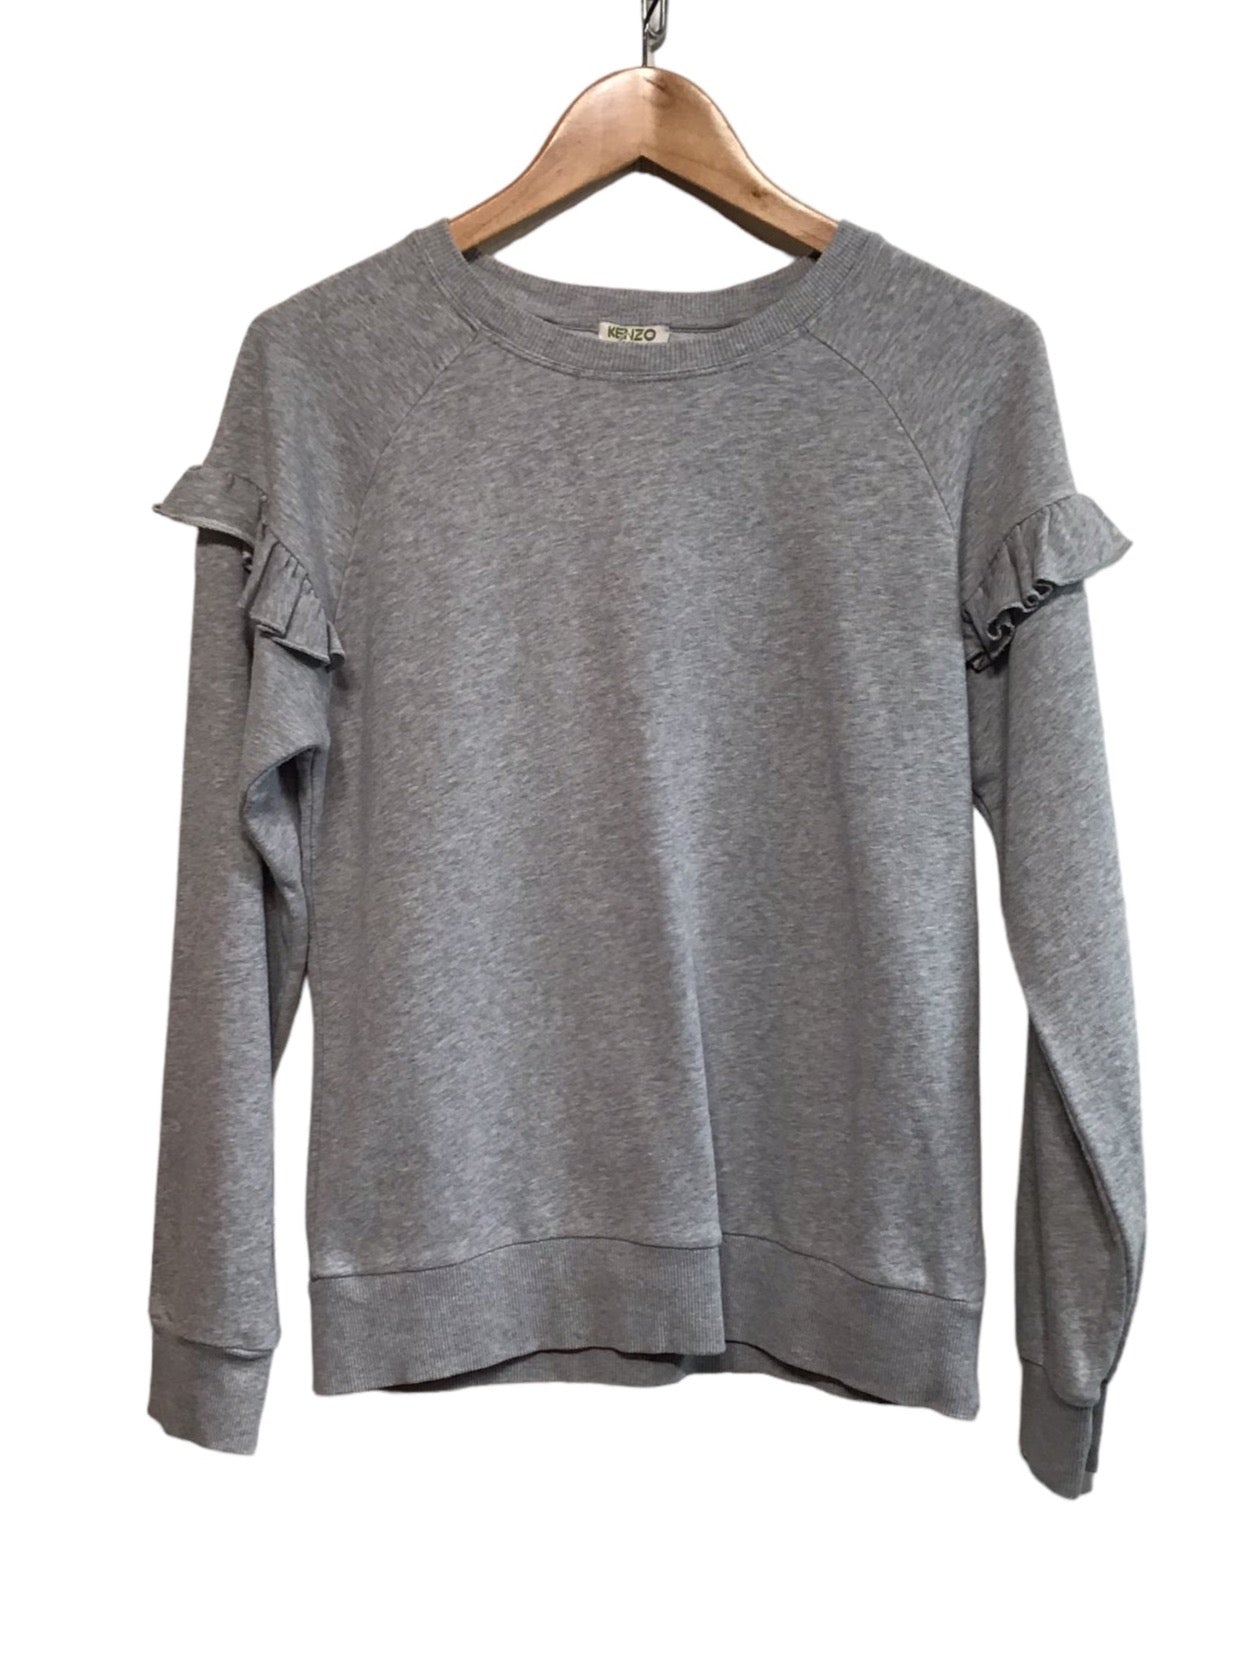 Kenzo Grey Sweatshirt (Size XS)